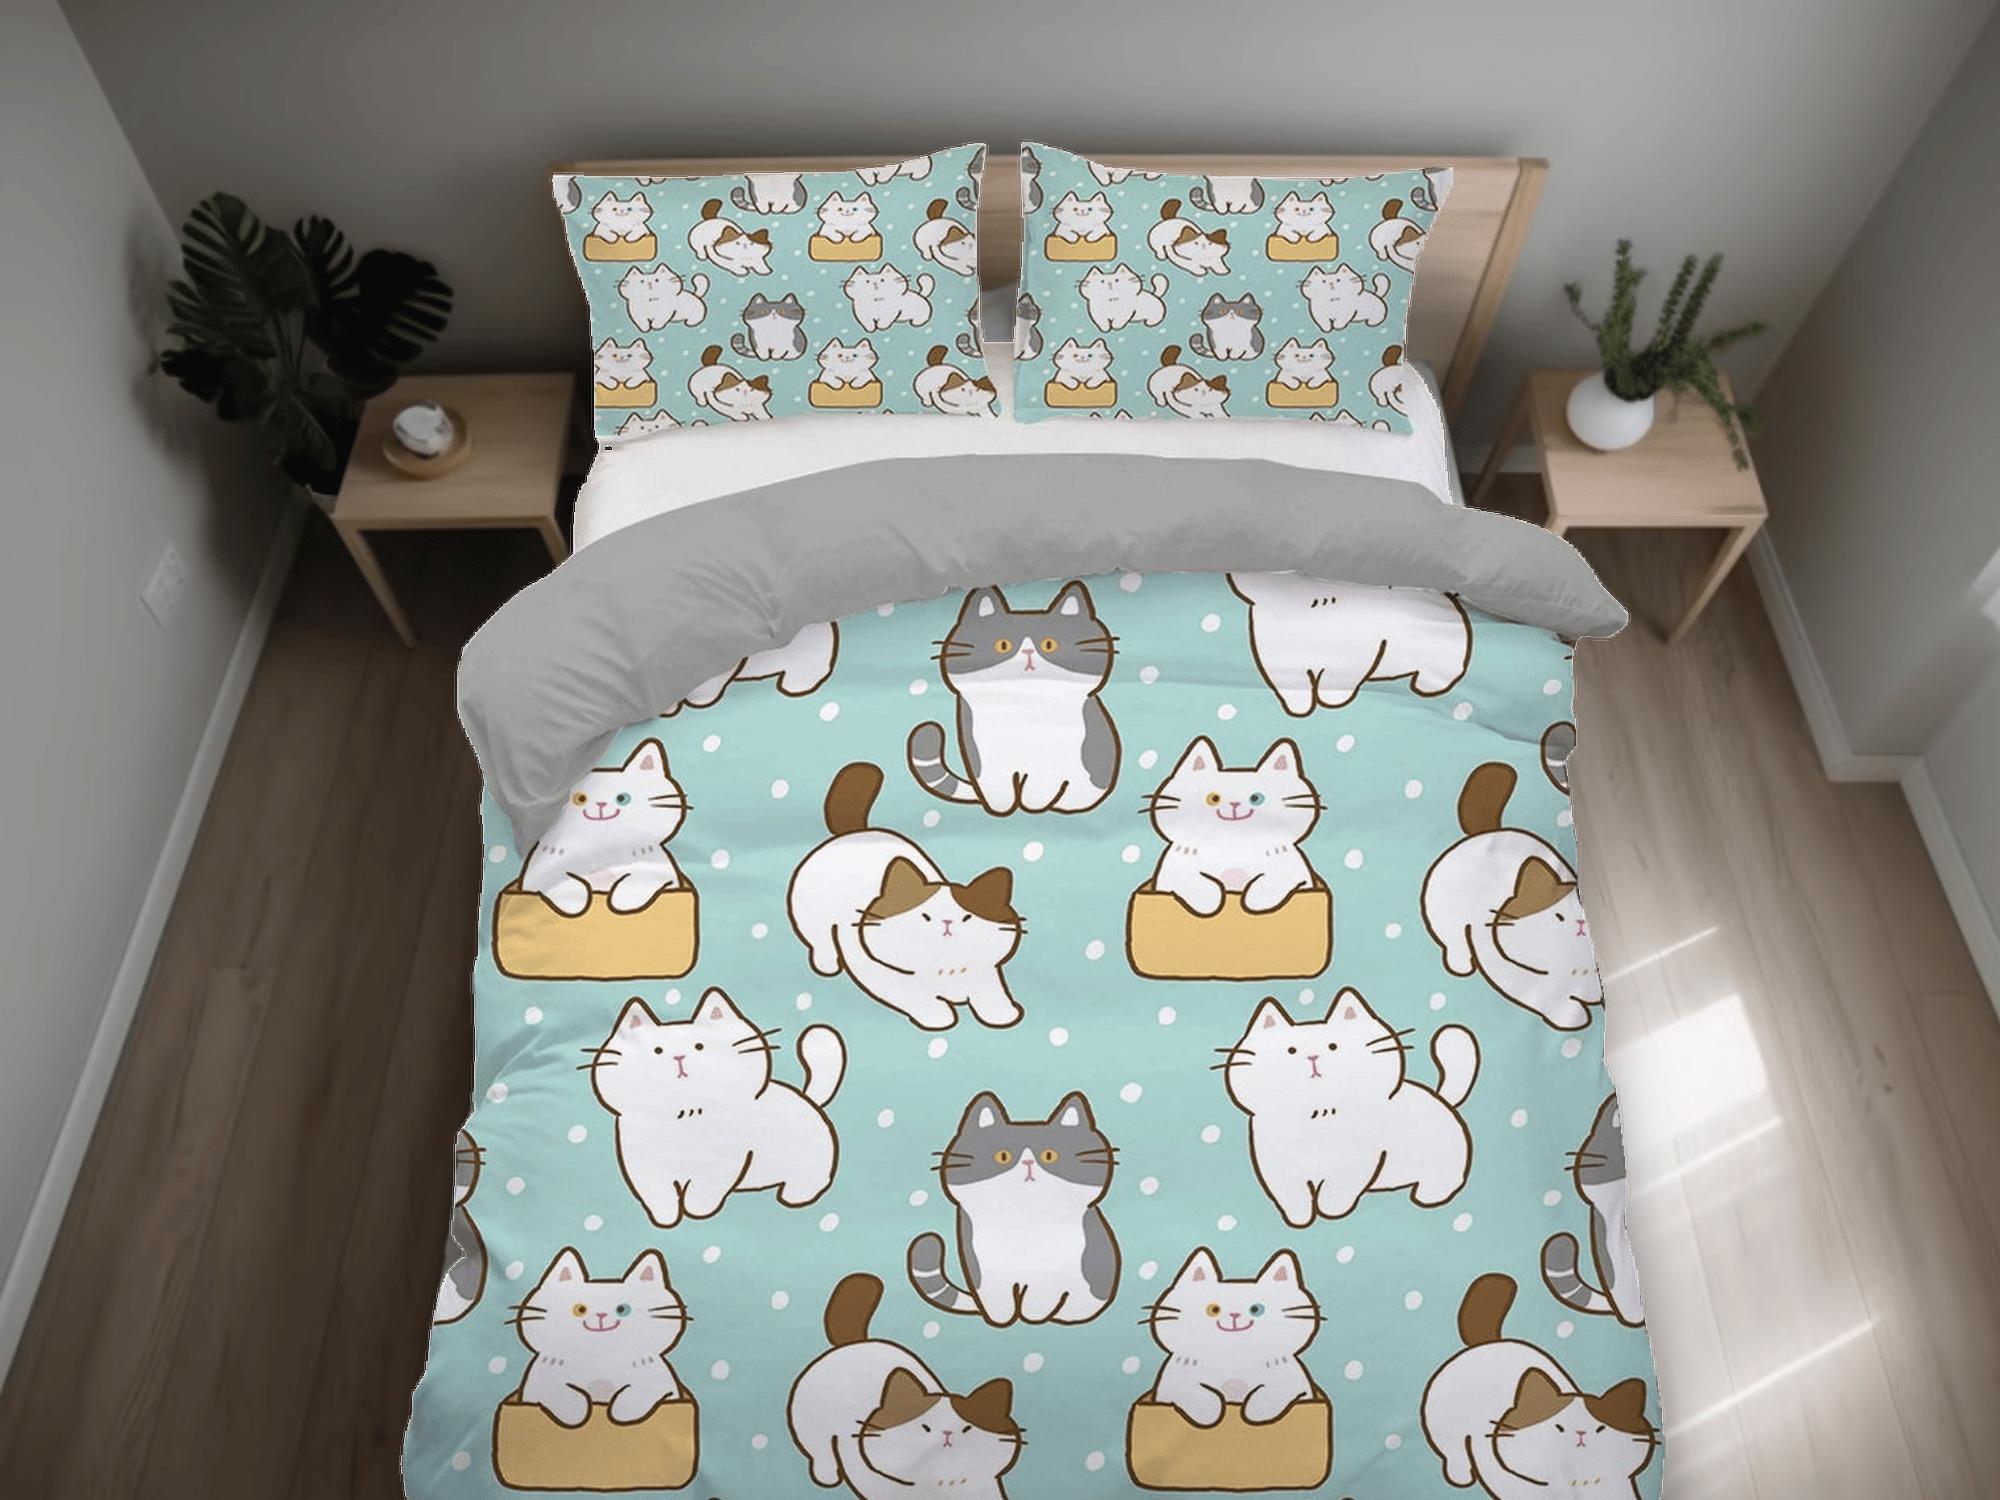 daintyduvet Cute cat bedding mint green, toddler bedding, kids duvet cover set, gift for cat lovers, baby bedding, baby shower gift, kawaii neko